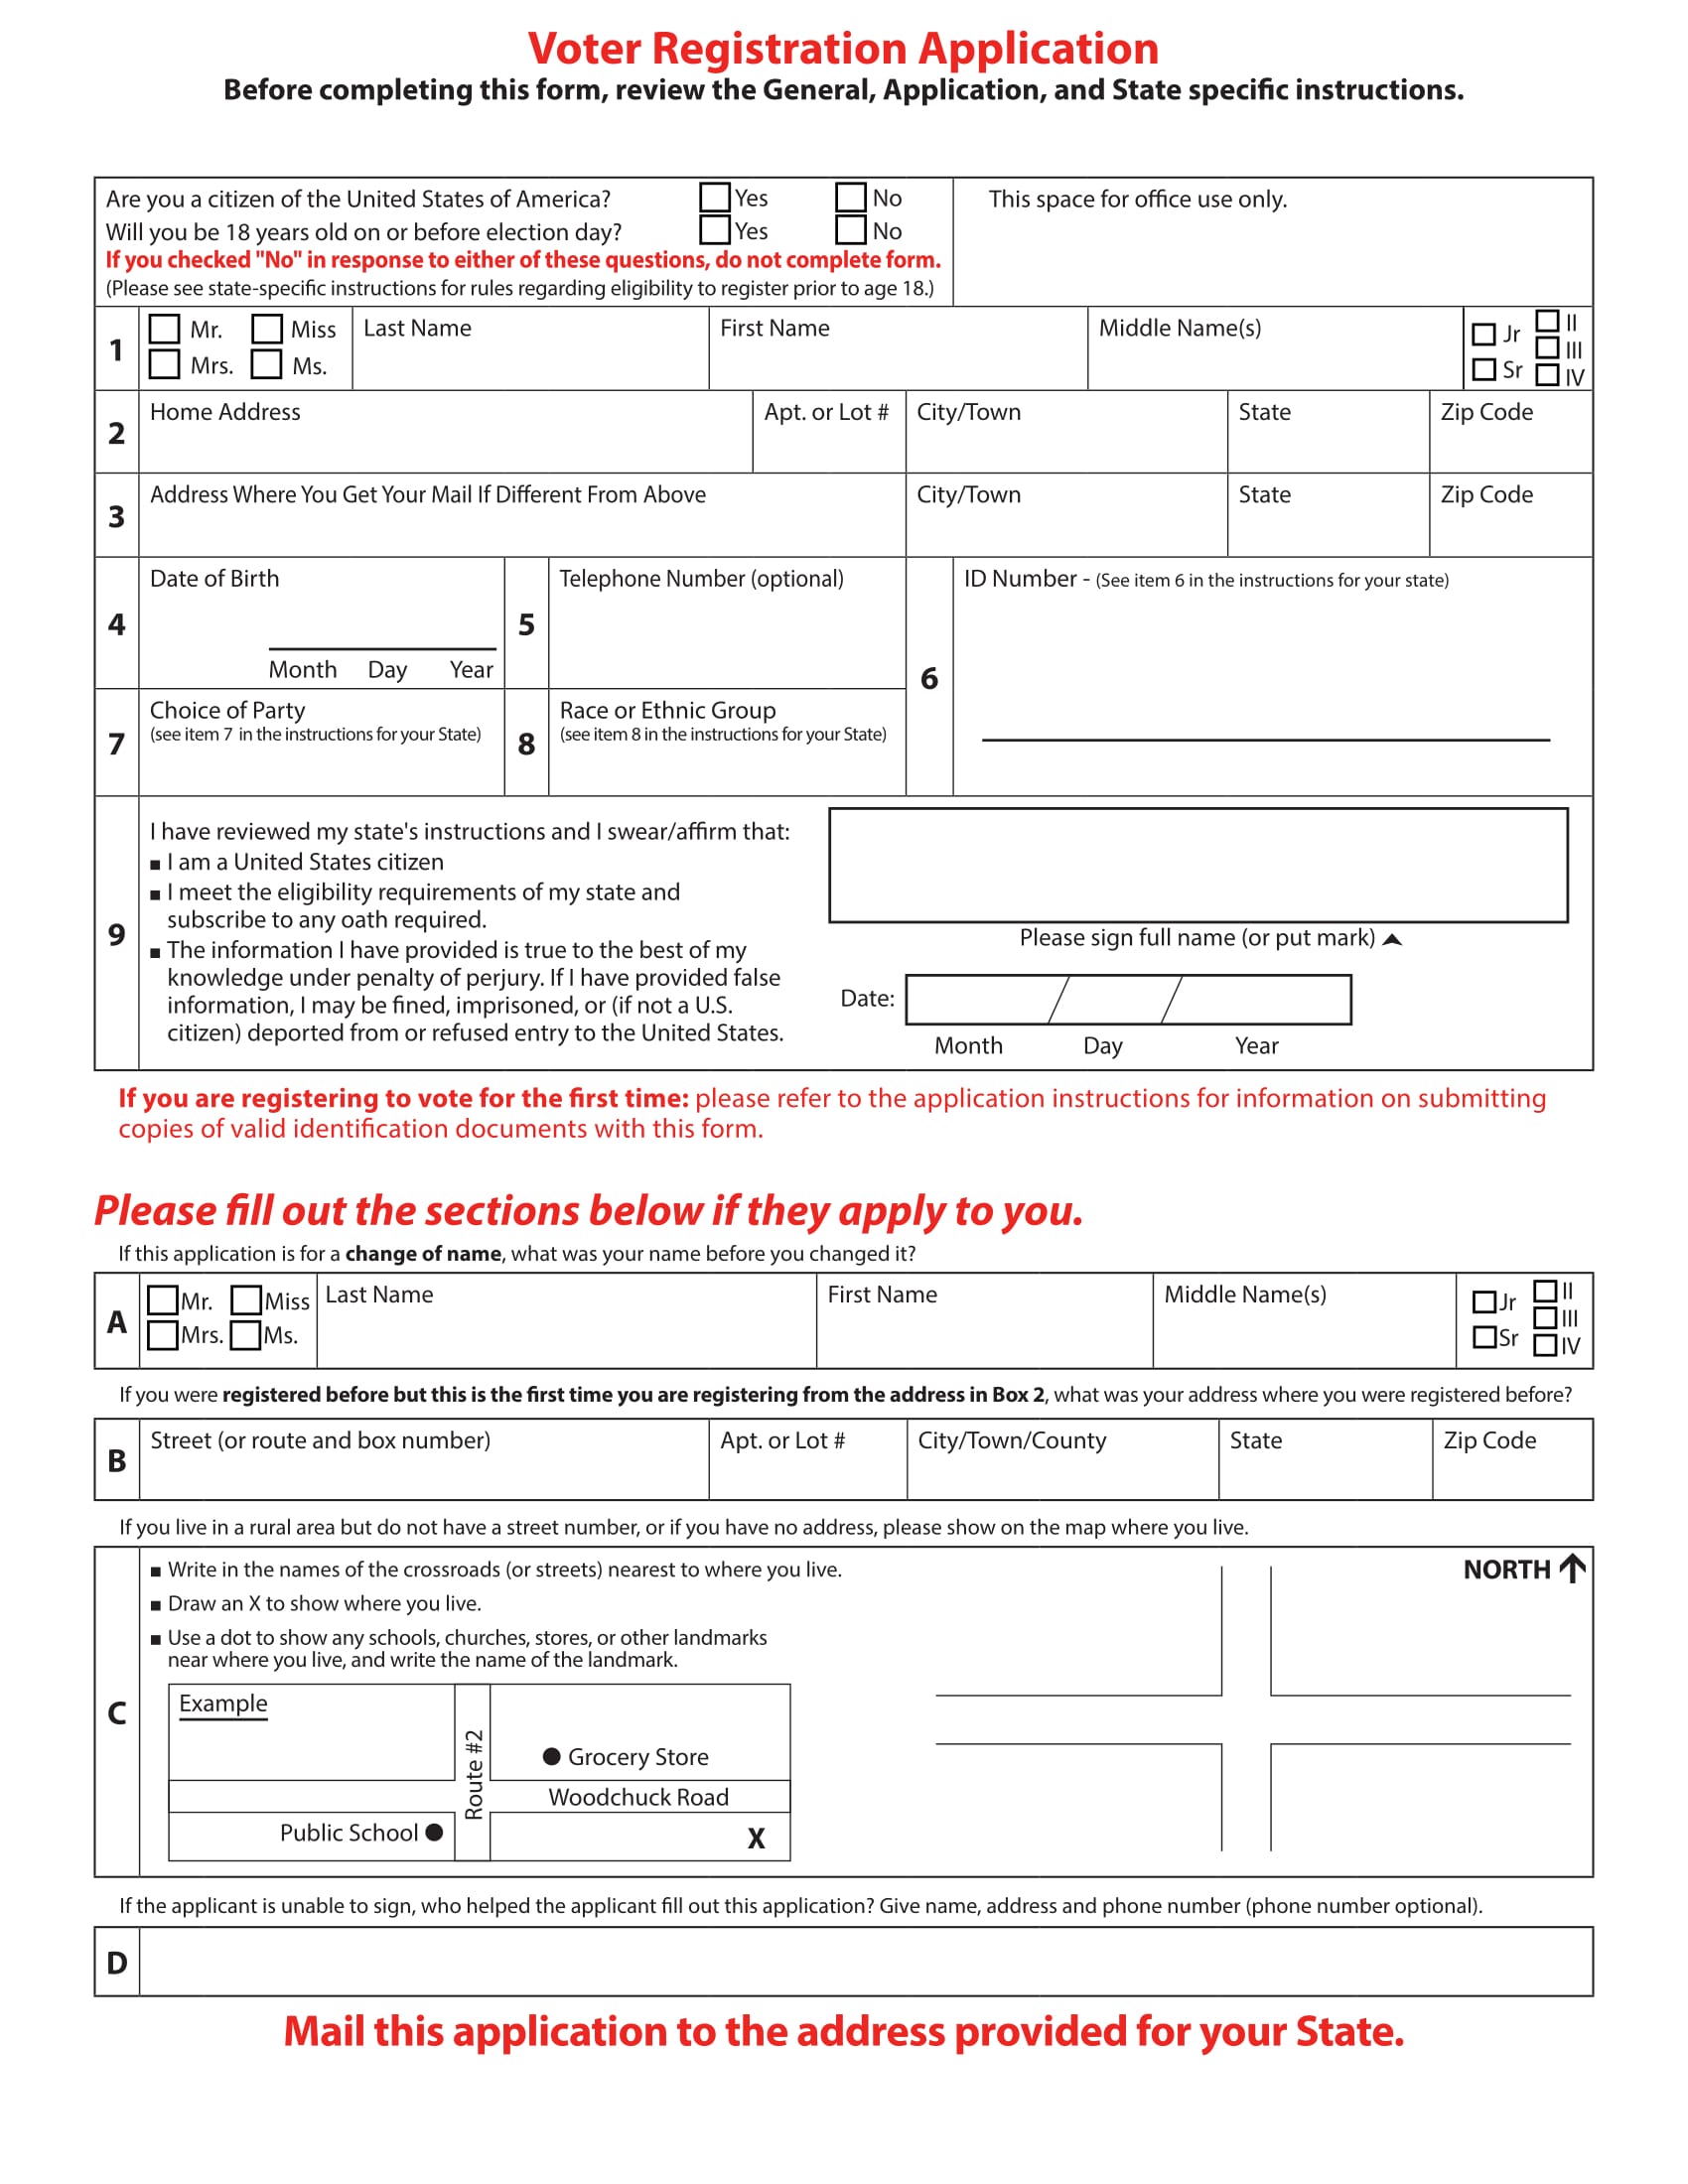 blank voter registration application form 04